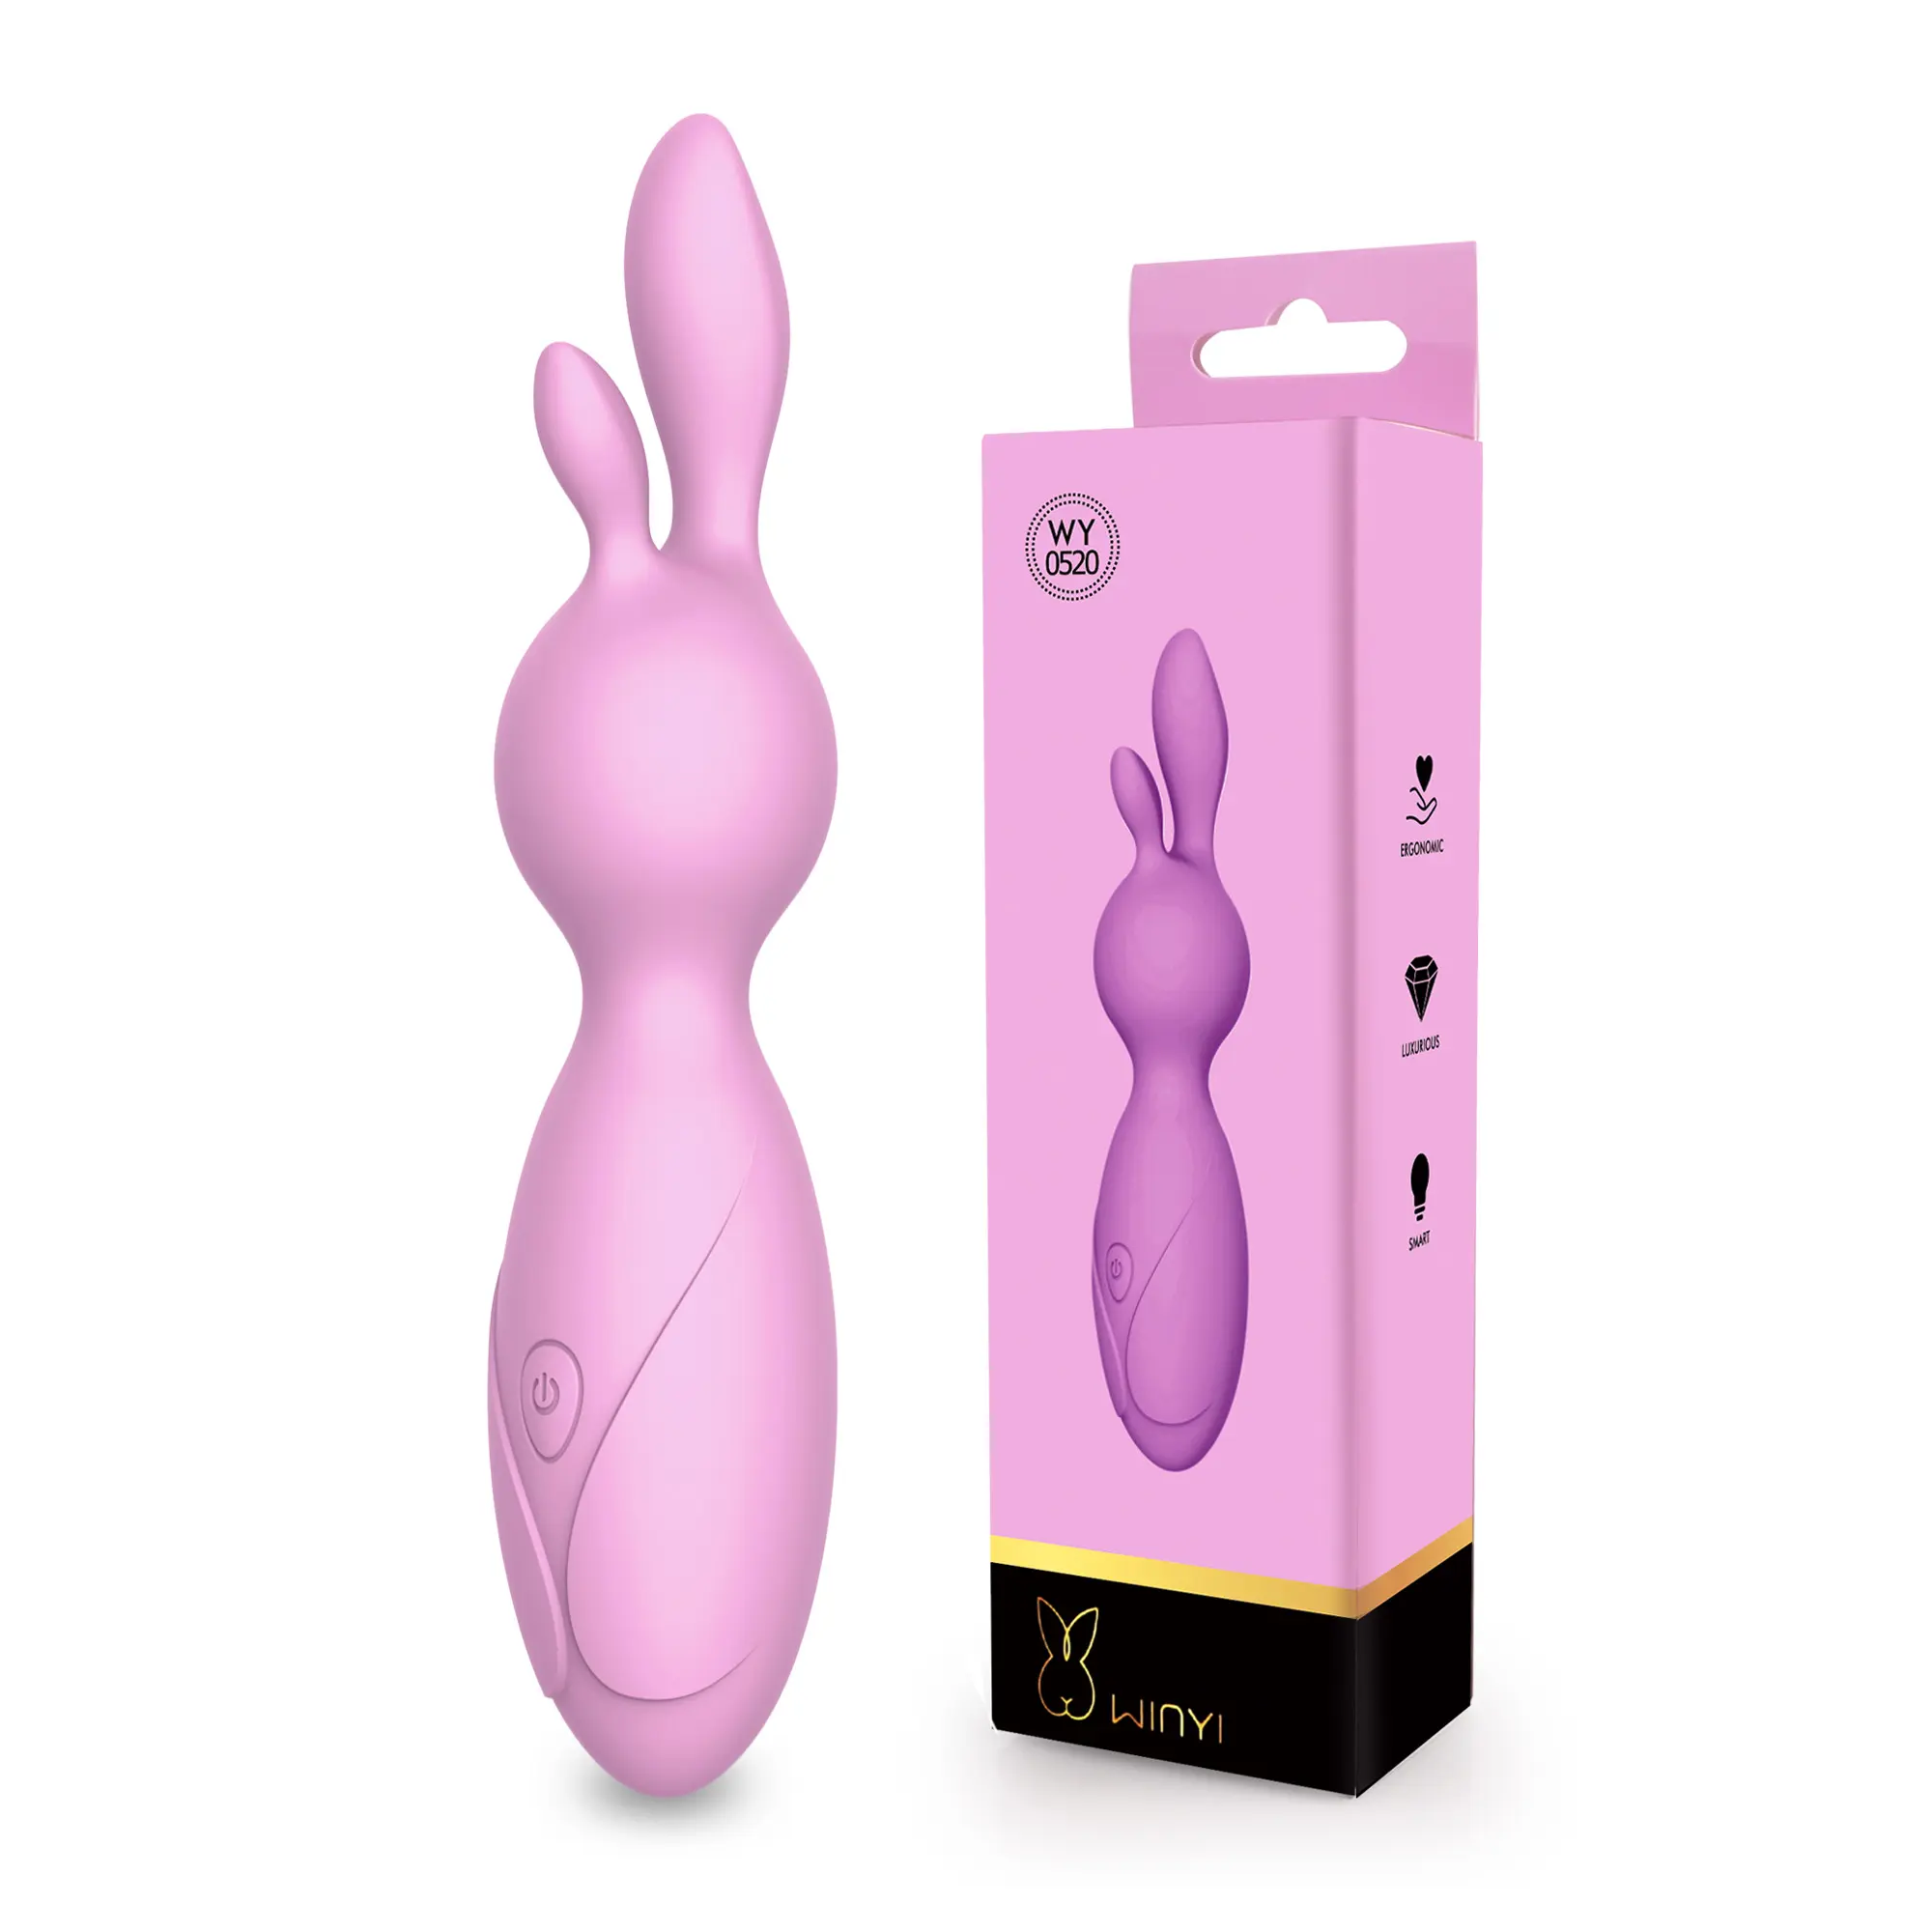 新デザイン日本女性IPX5防水大人の大人のおもちゃ女性セックス製品でセックスシリコンラビットバイブレーターを使用